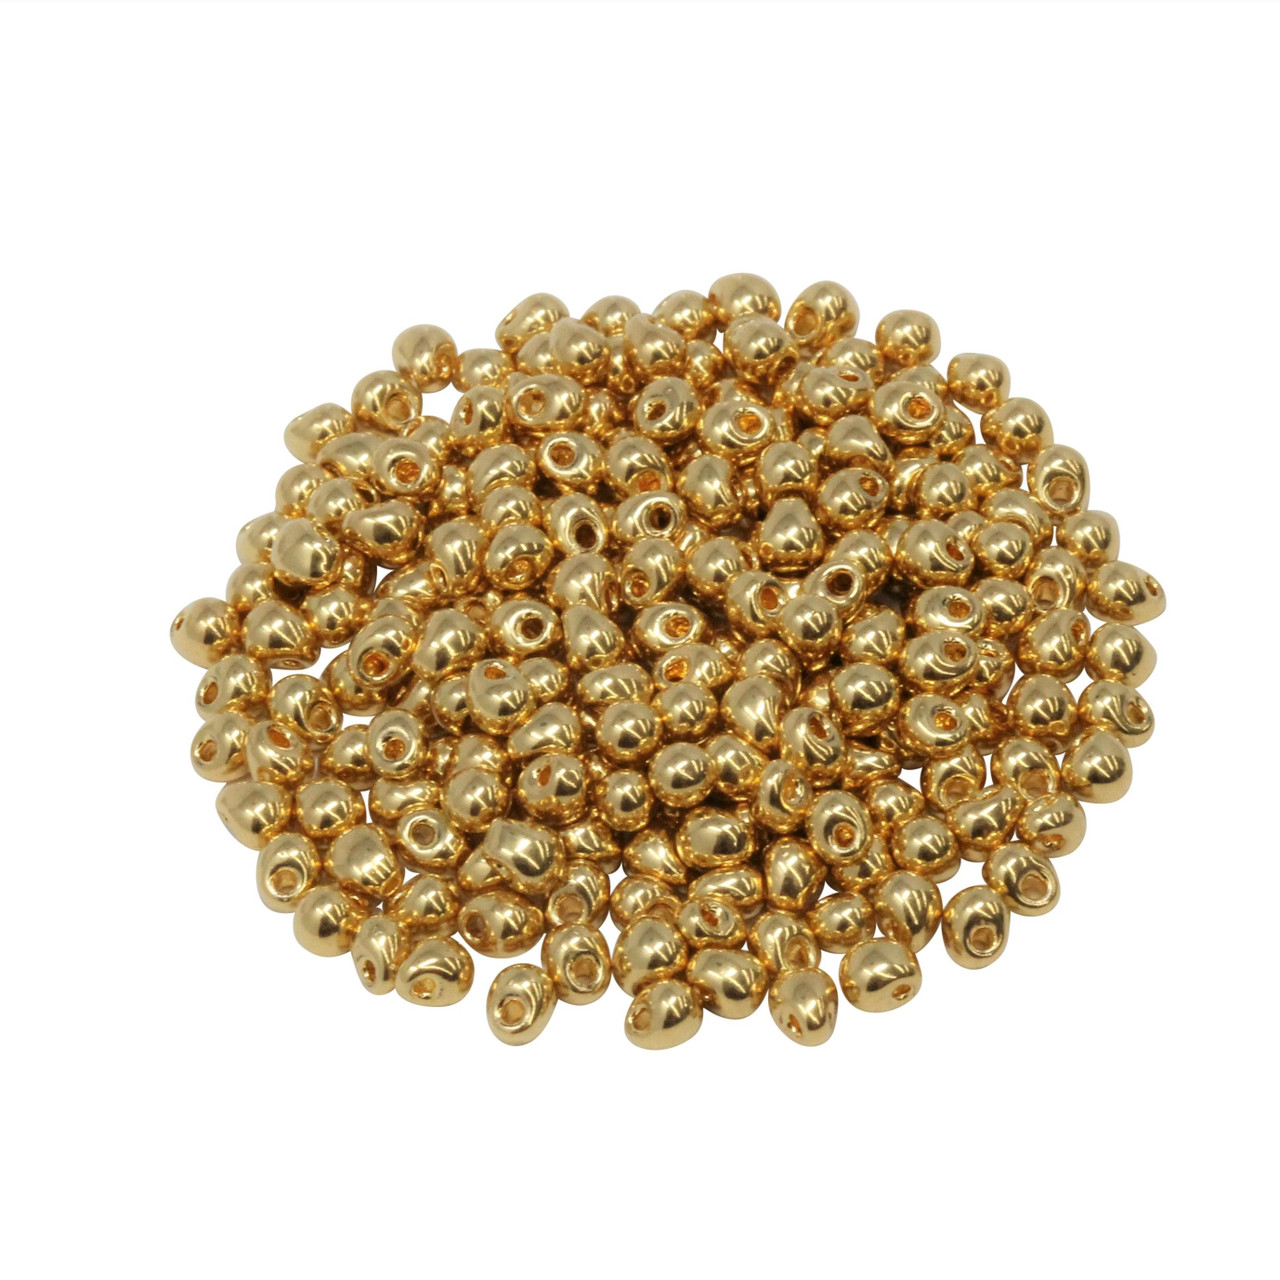 Size 8 Miyuki Seed Beads -- 465 24K Gold Plated